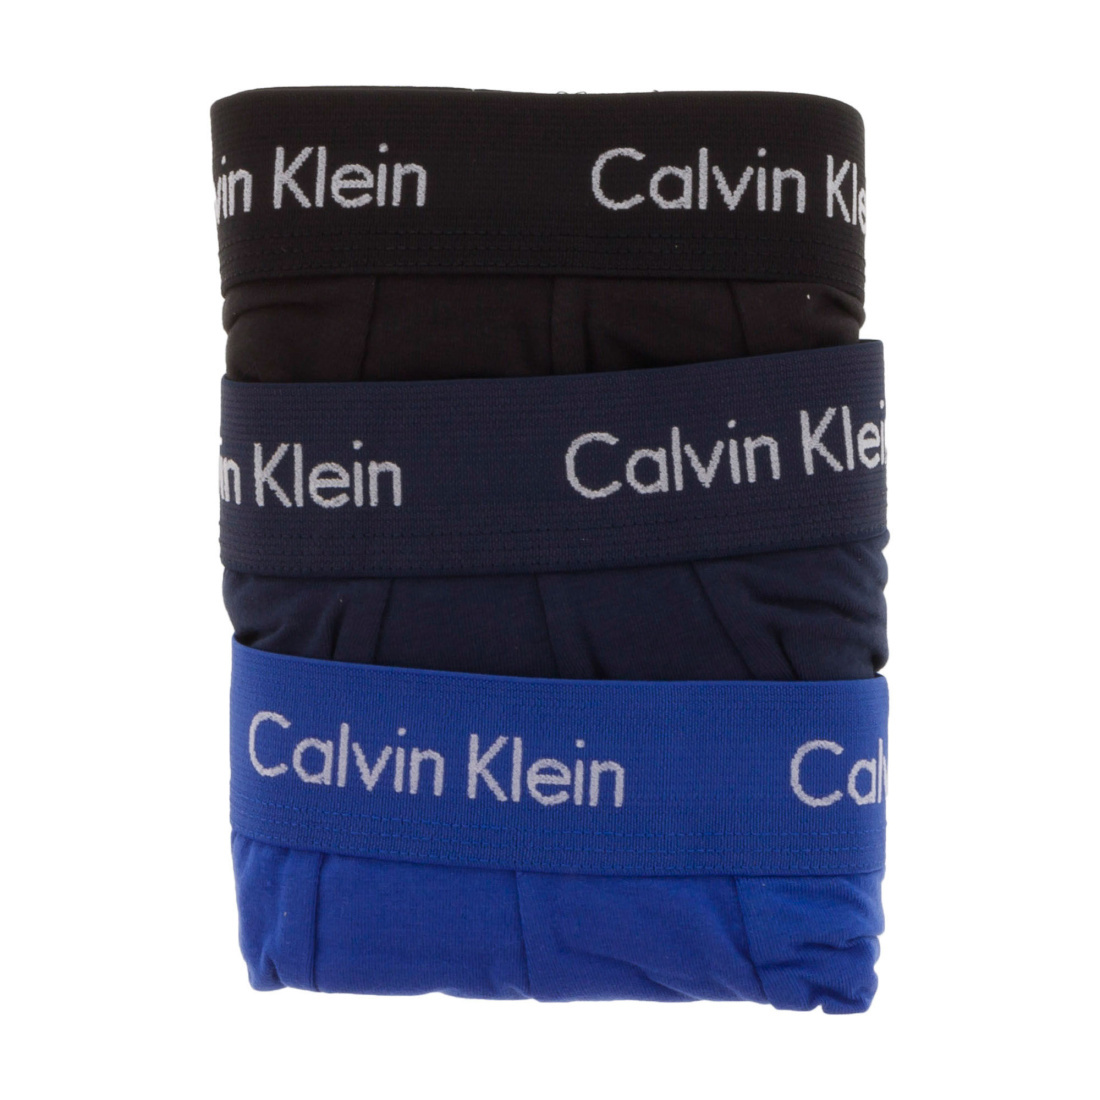 Calvin Klein sada pánskych boxeriek - S (4KU)